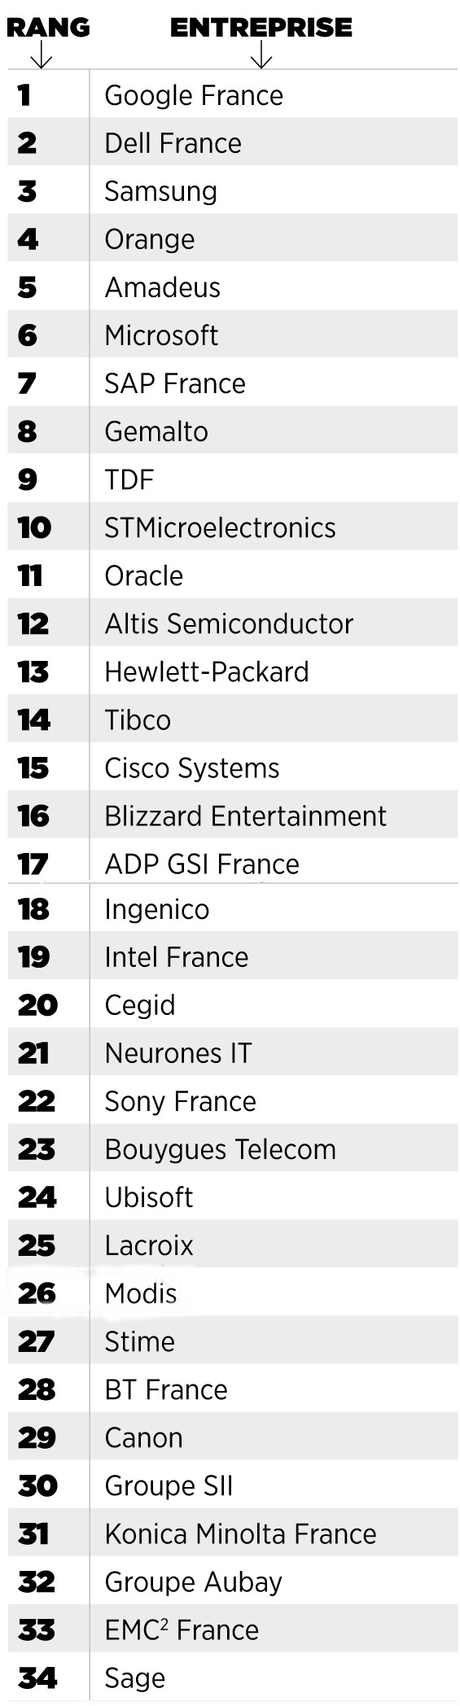 Où rencontrer les entreprises du top 30 des meilleurs employeurs High Tech de France ?